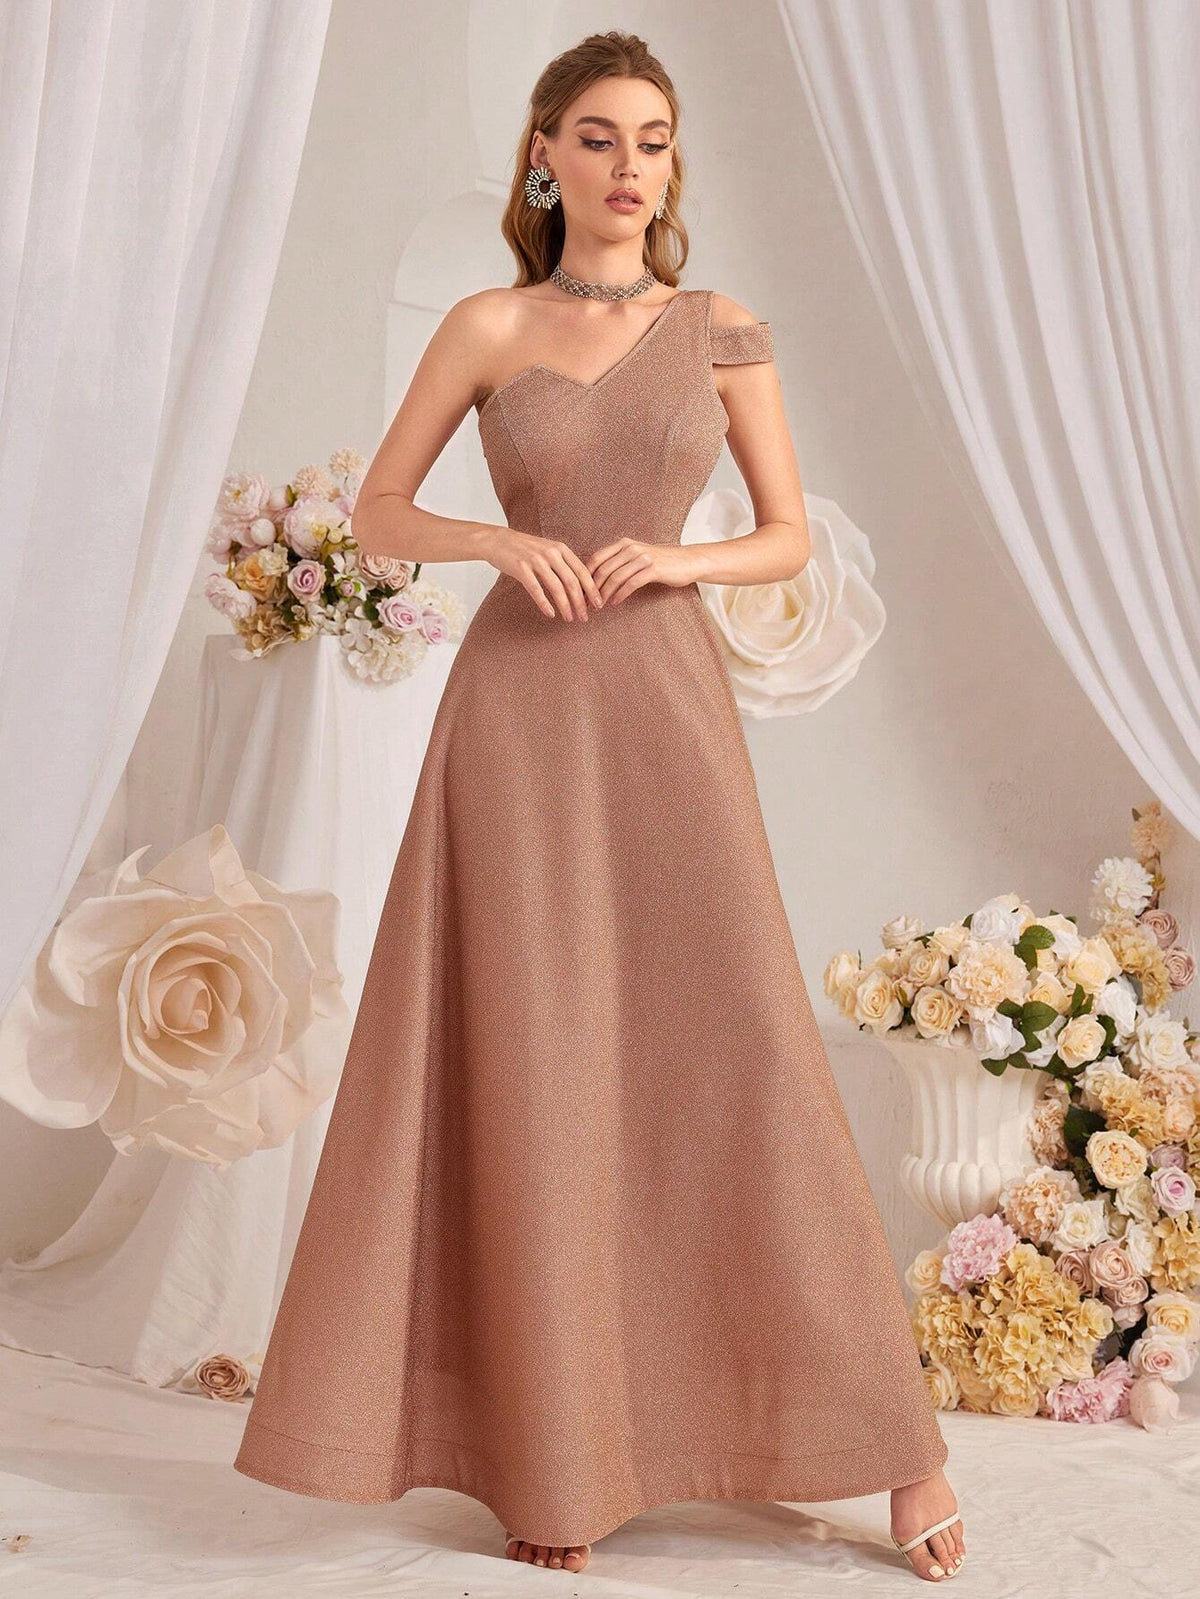 Women's Elegant Solid Color One Shoulder Slim Fit A-Line Evening Dress